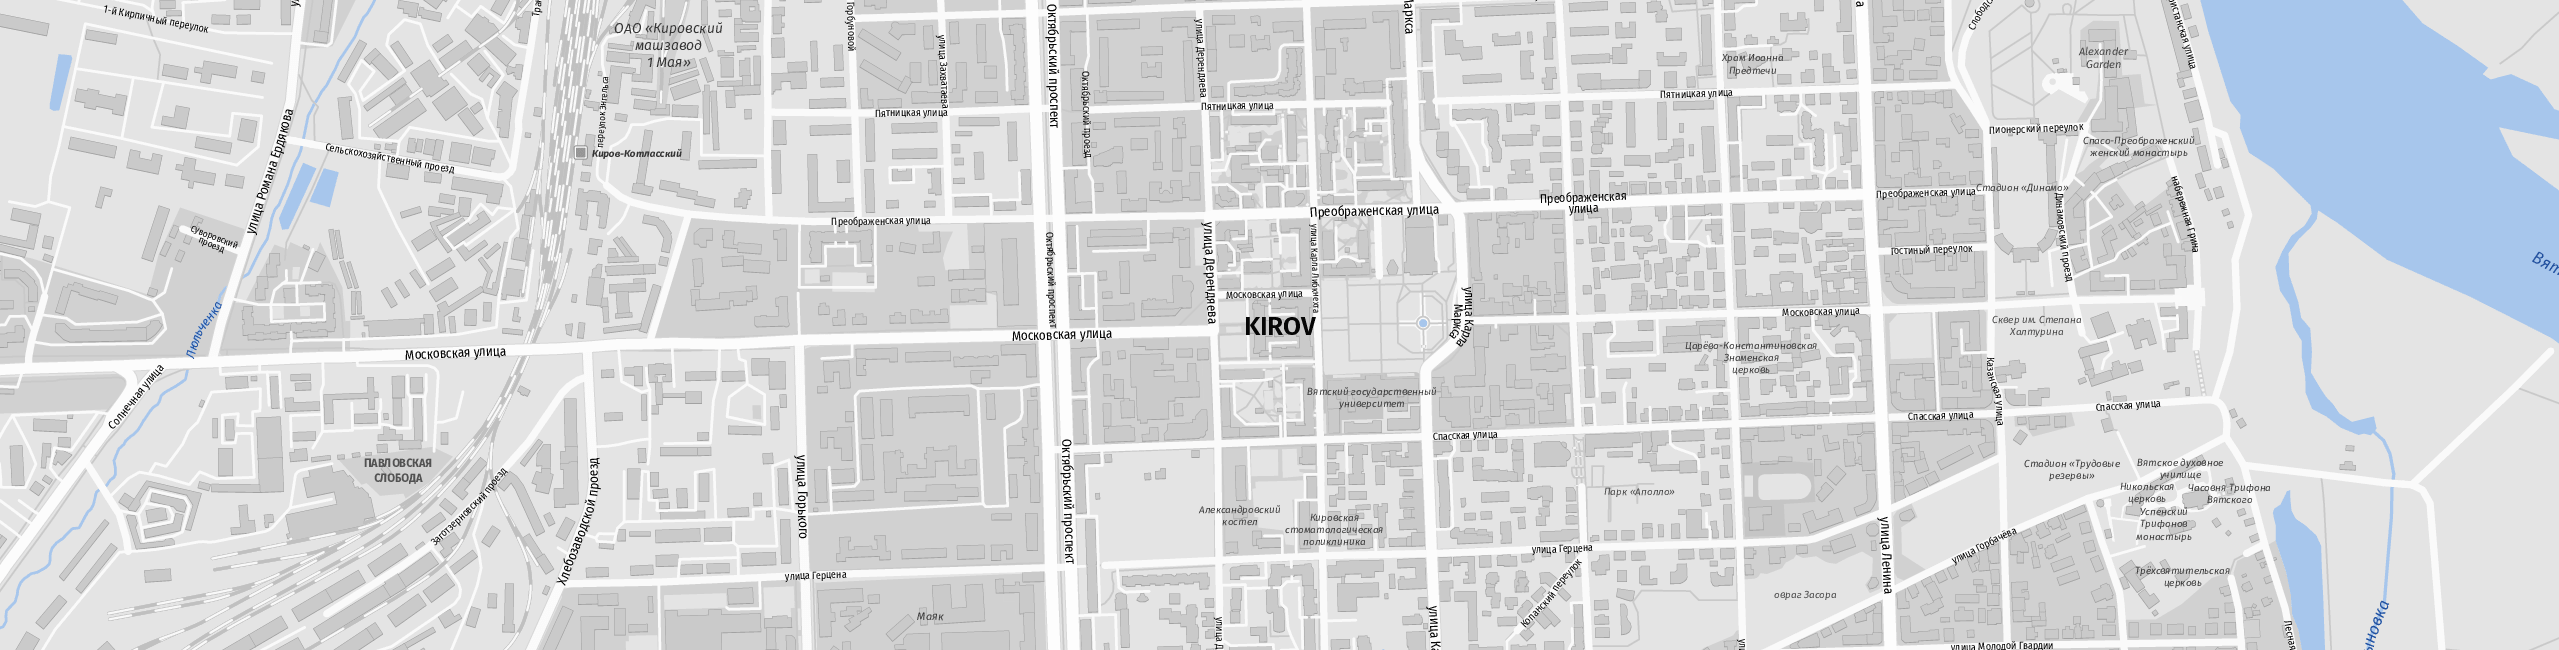 Stadtplan Kirow zum Downloaden.